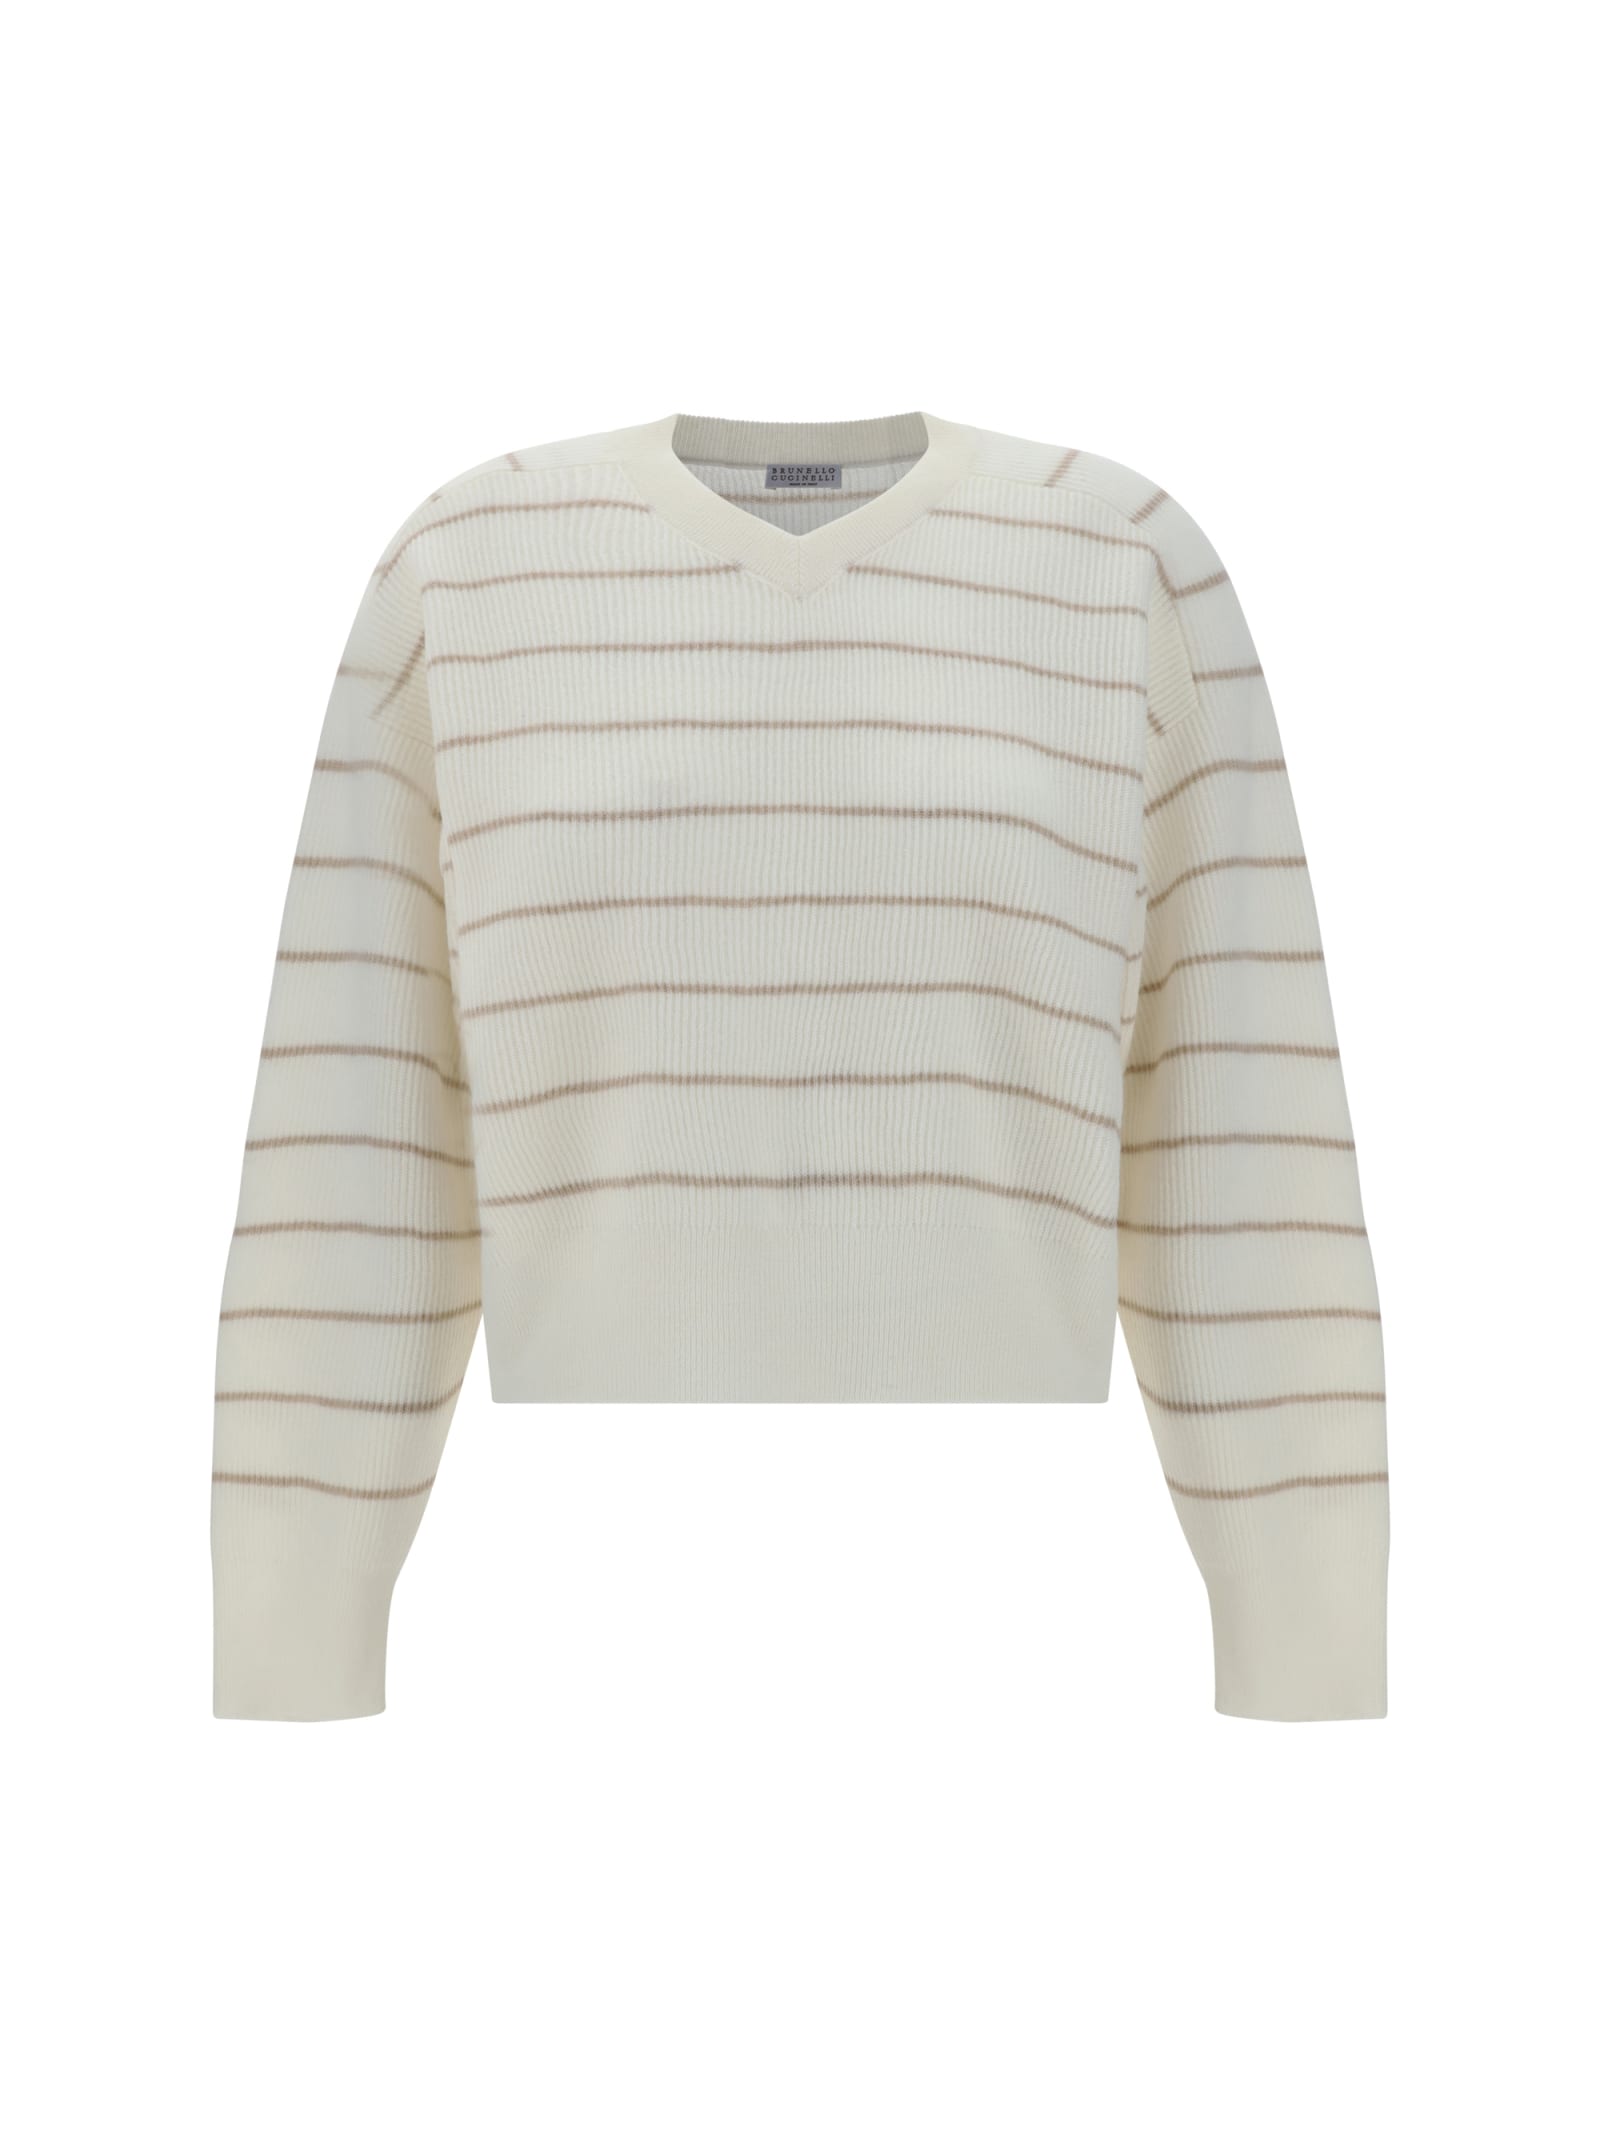 Shop Brunello Cucinelli Sweater In Brown/neutrals